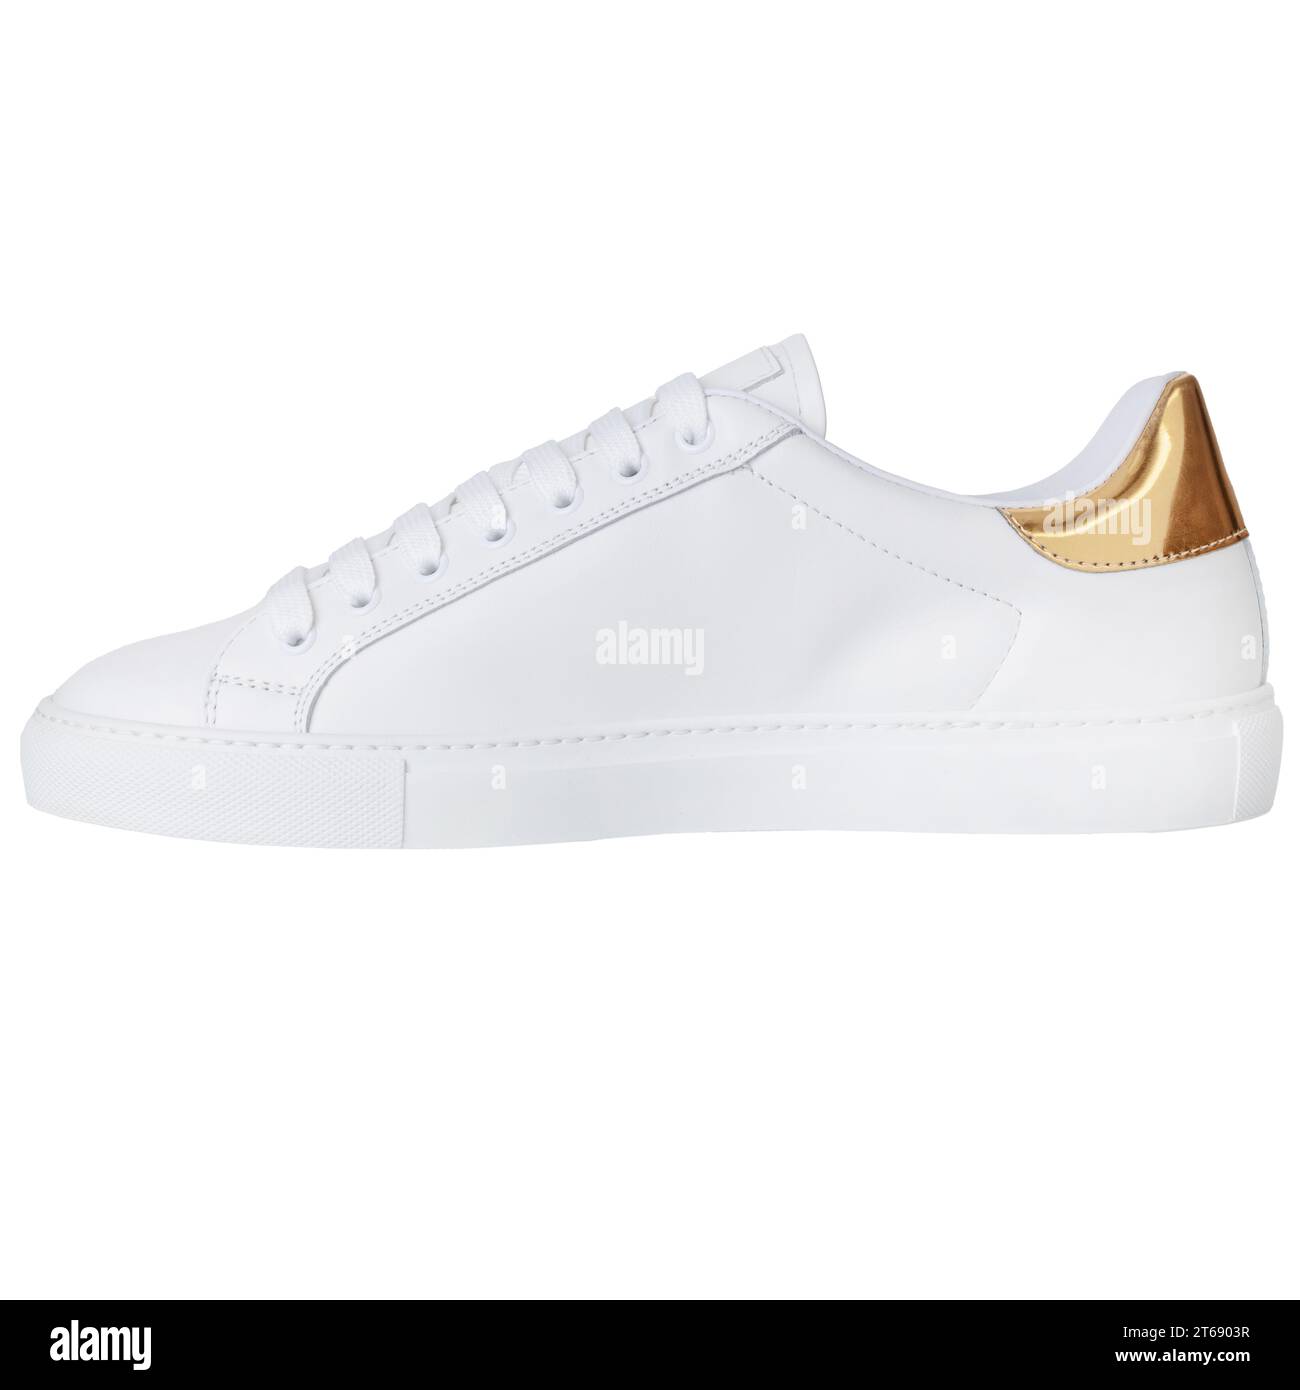 Chaussure de sport blanche avec accessoires plaqués or. Vue latérale Banque D'Images